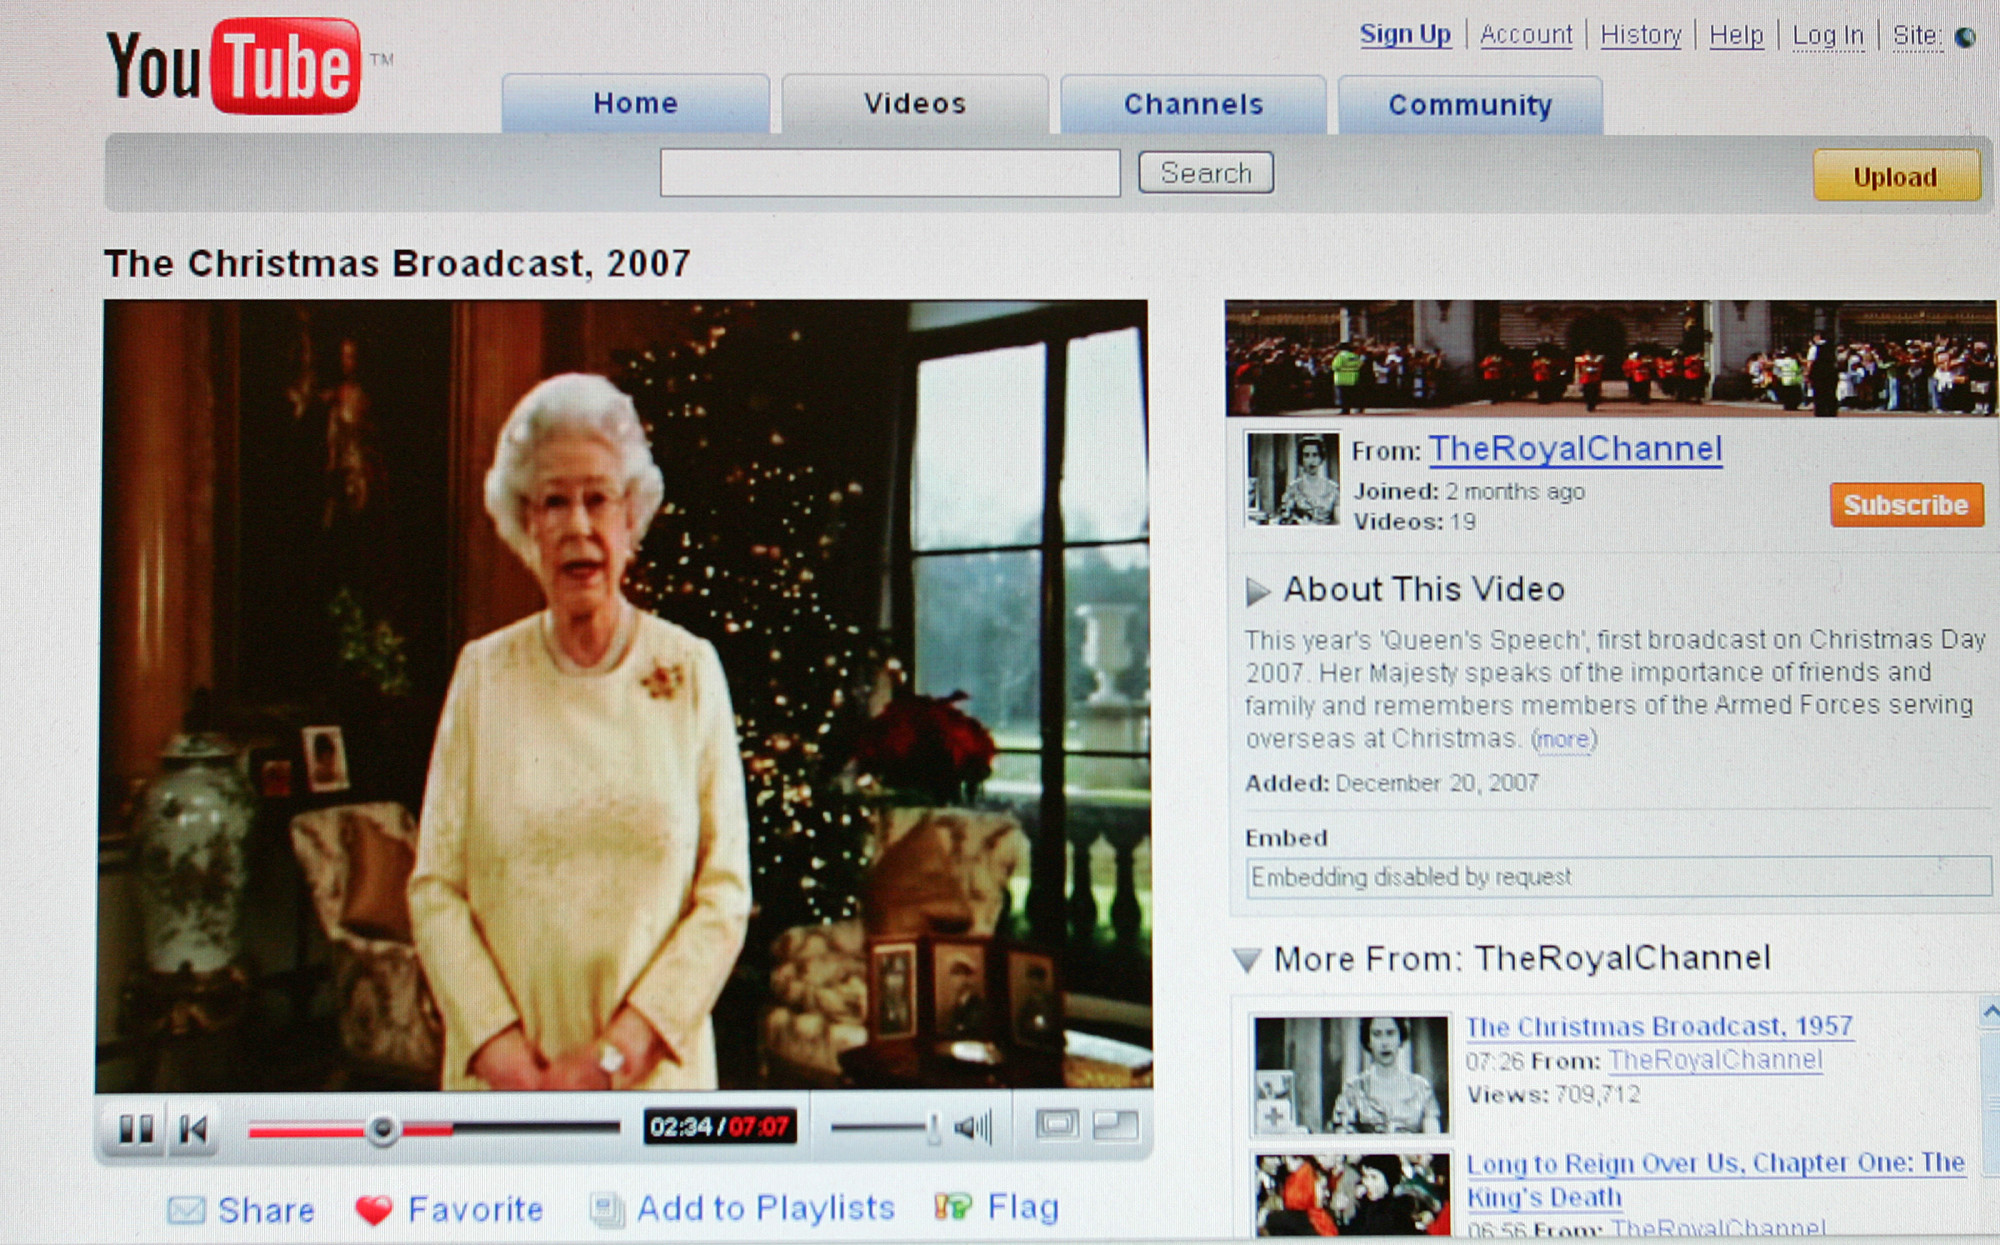 2007-ben került fel először a királyi család hivatalos Youtube-csatornájára a királynő aktuális karácsonyi tévébeszéde